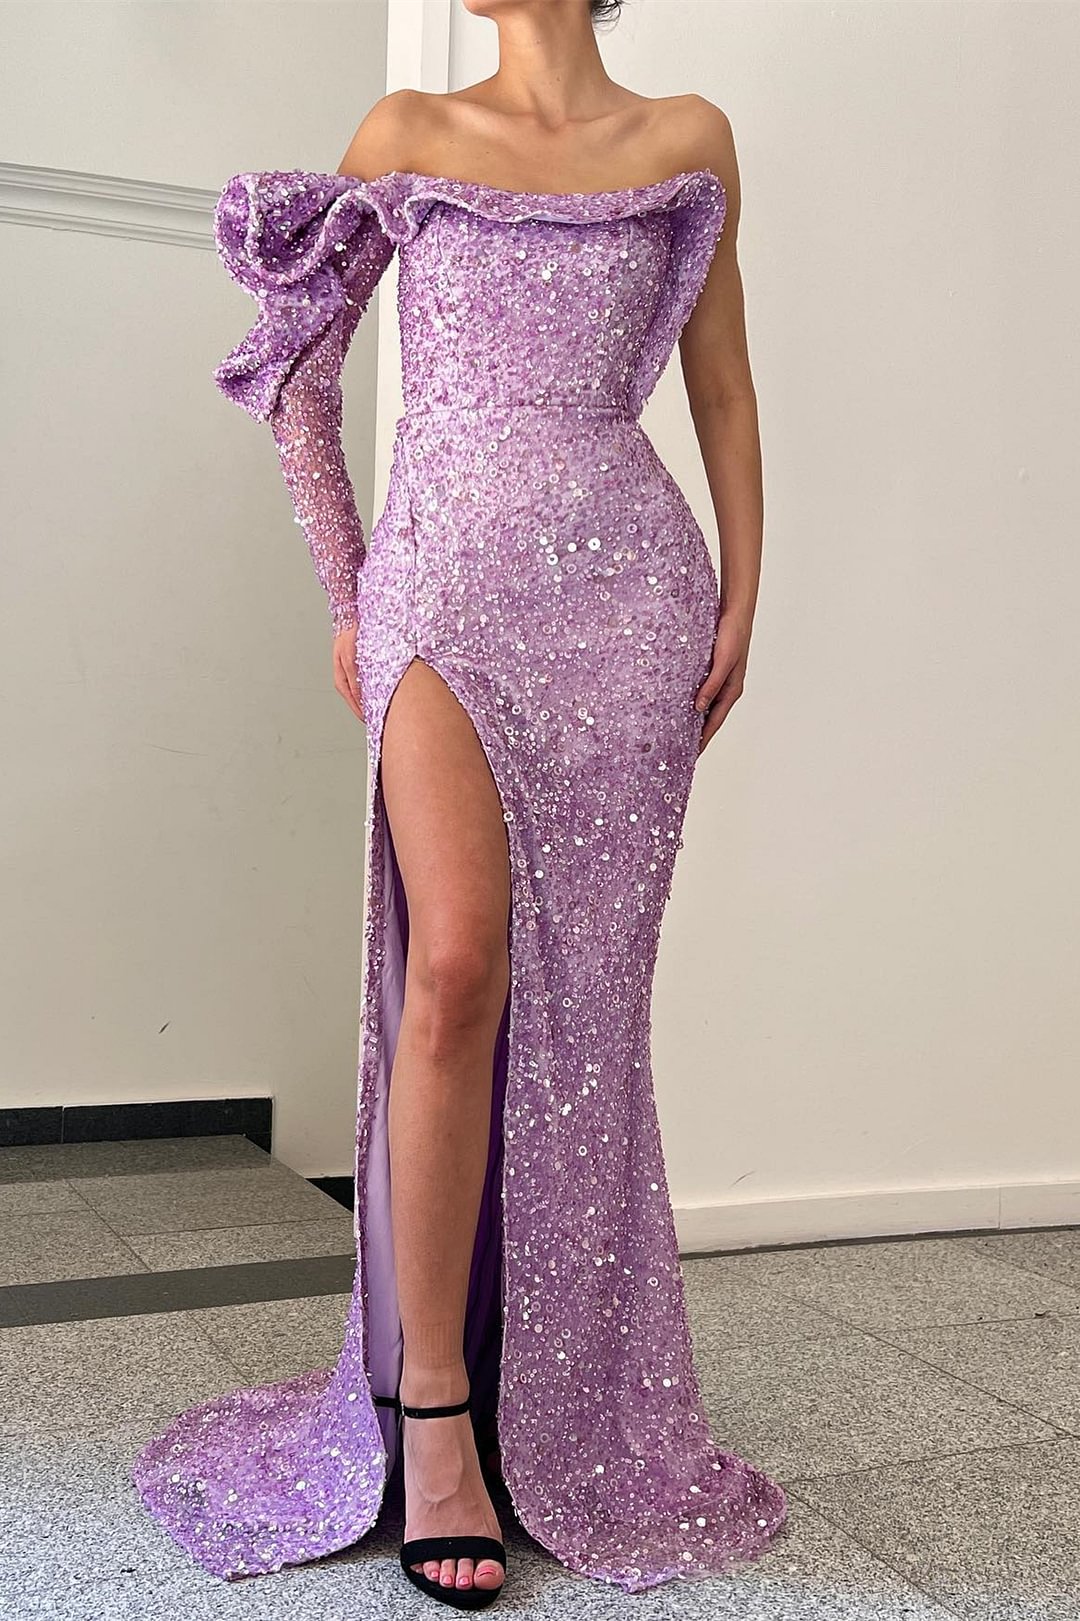 Purple One Shoulder Long Sleeve Mermaid Evening Dress With Sequins Slit |Ballbellas Ballbellas